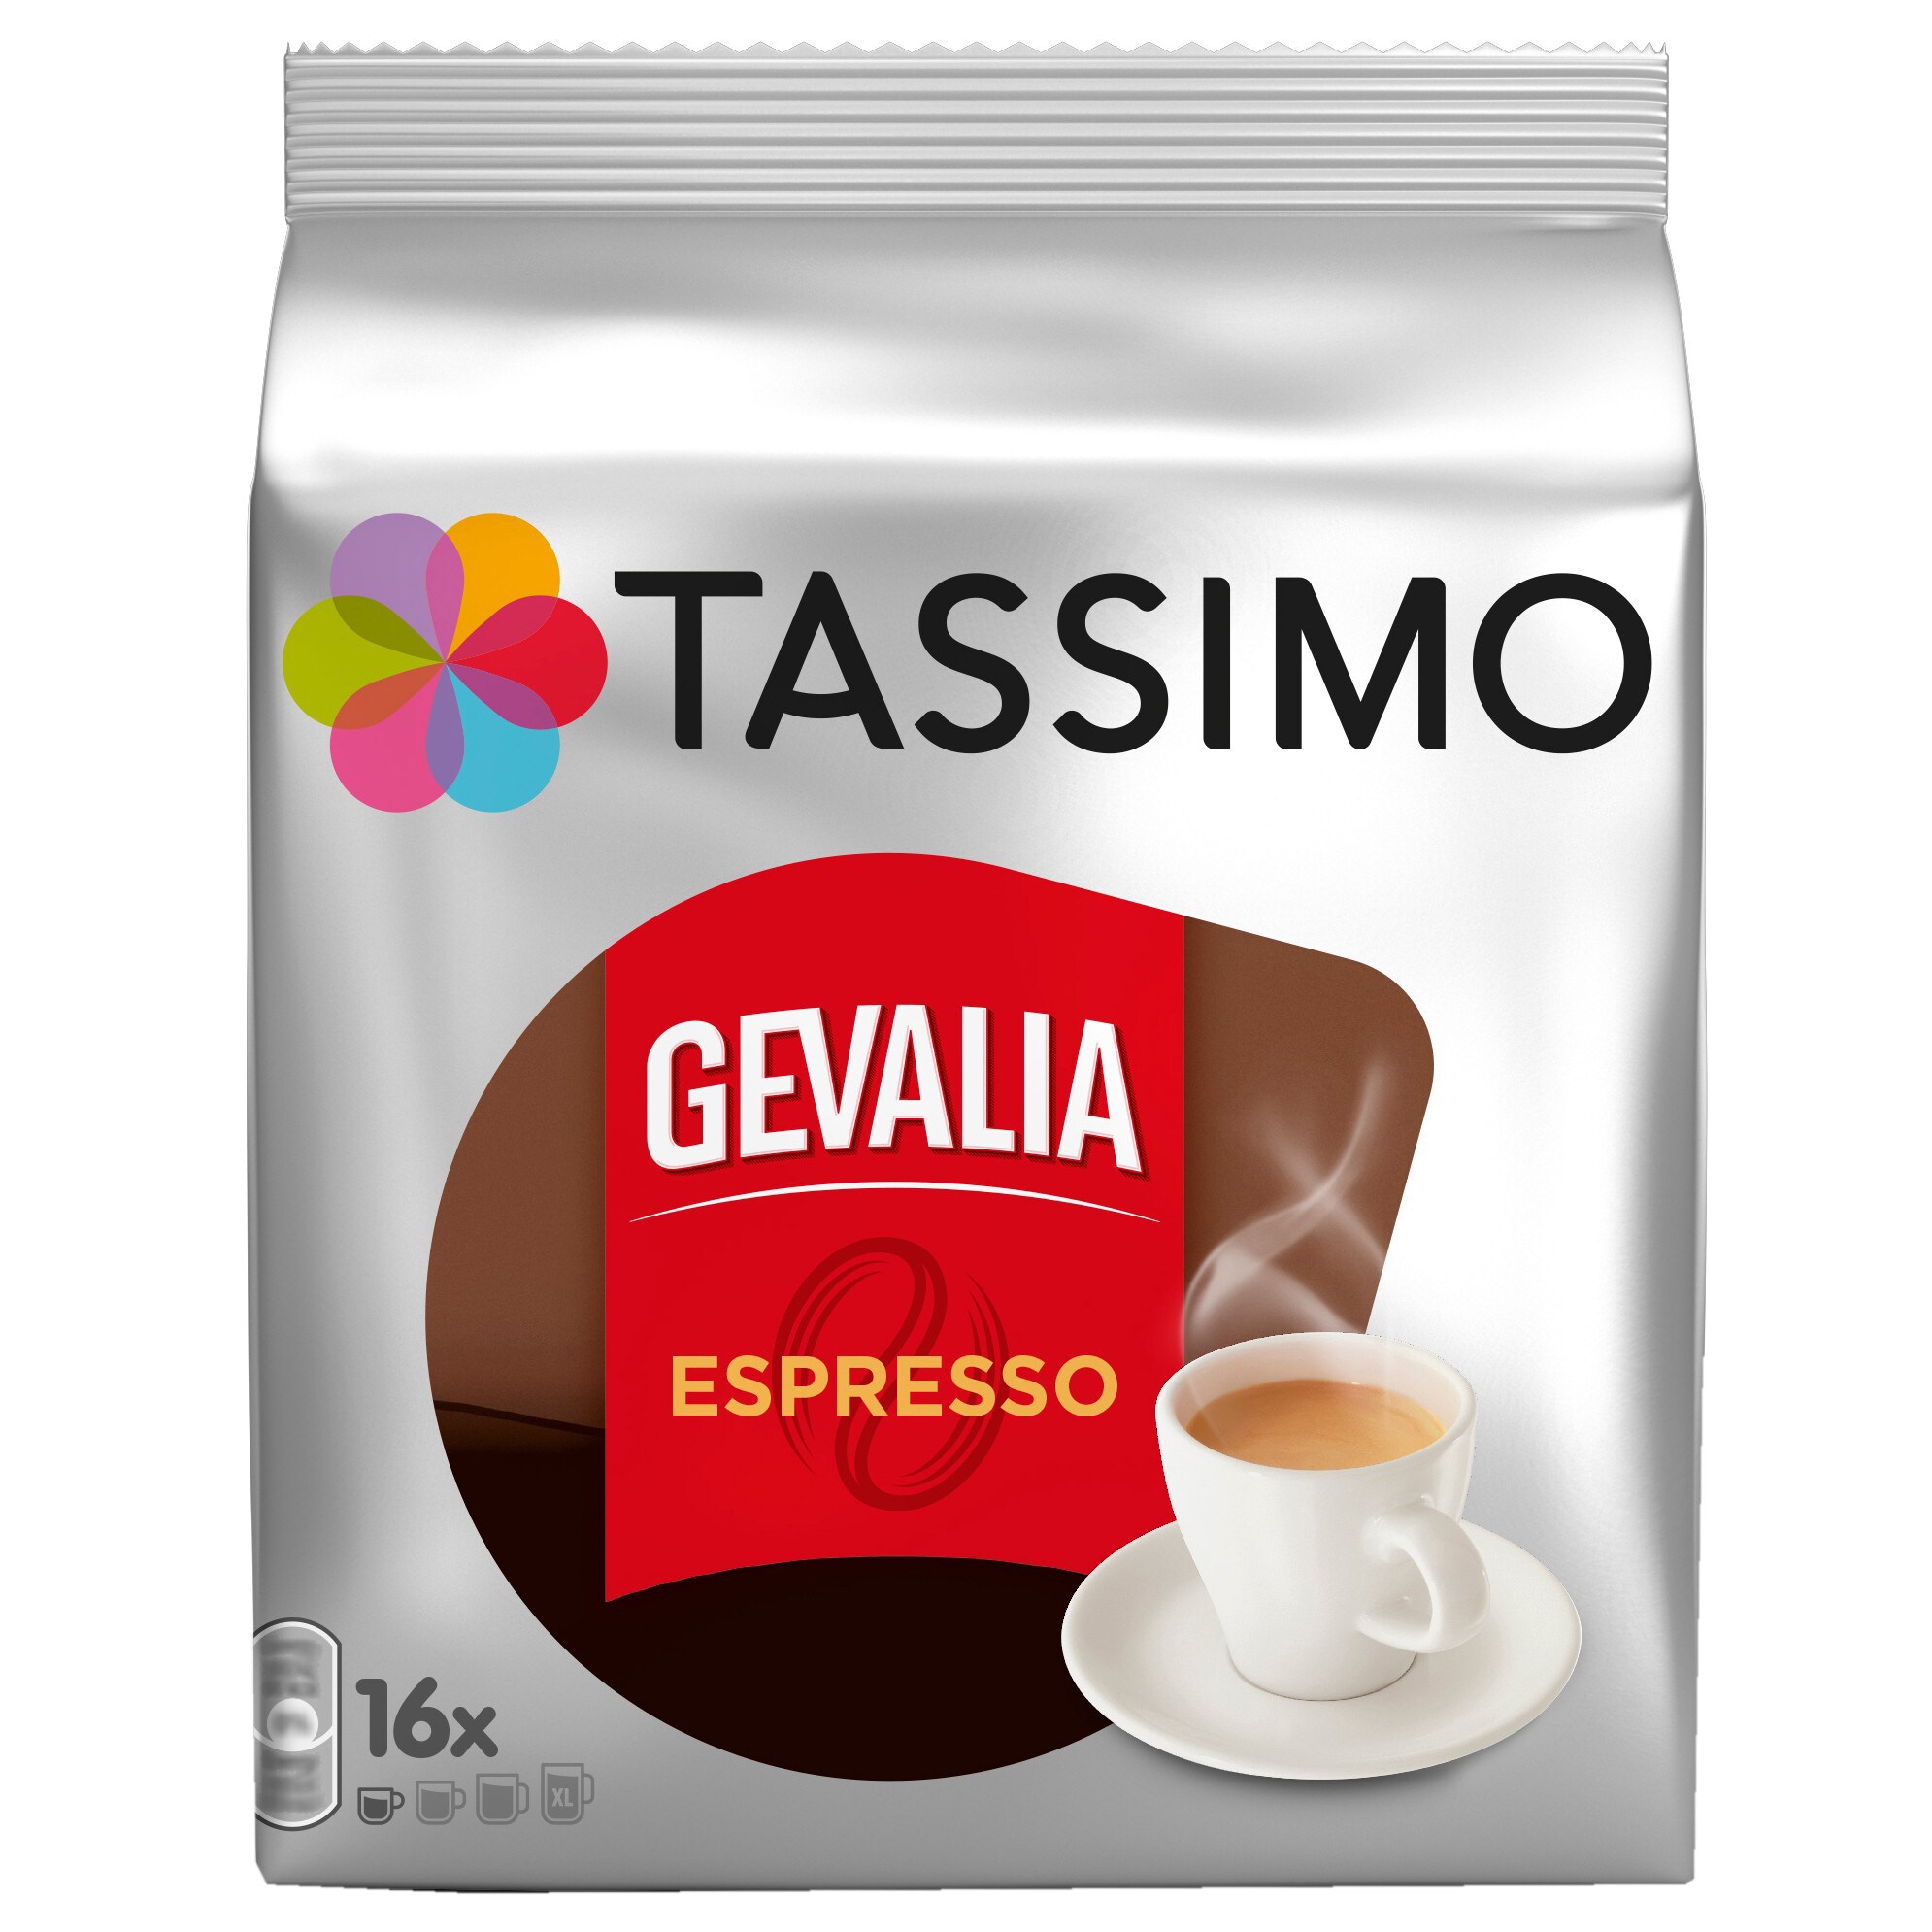 Tassimo Gevalia Espresso kapsler thumbnail